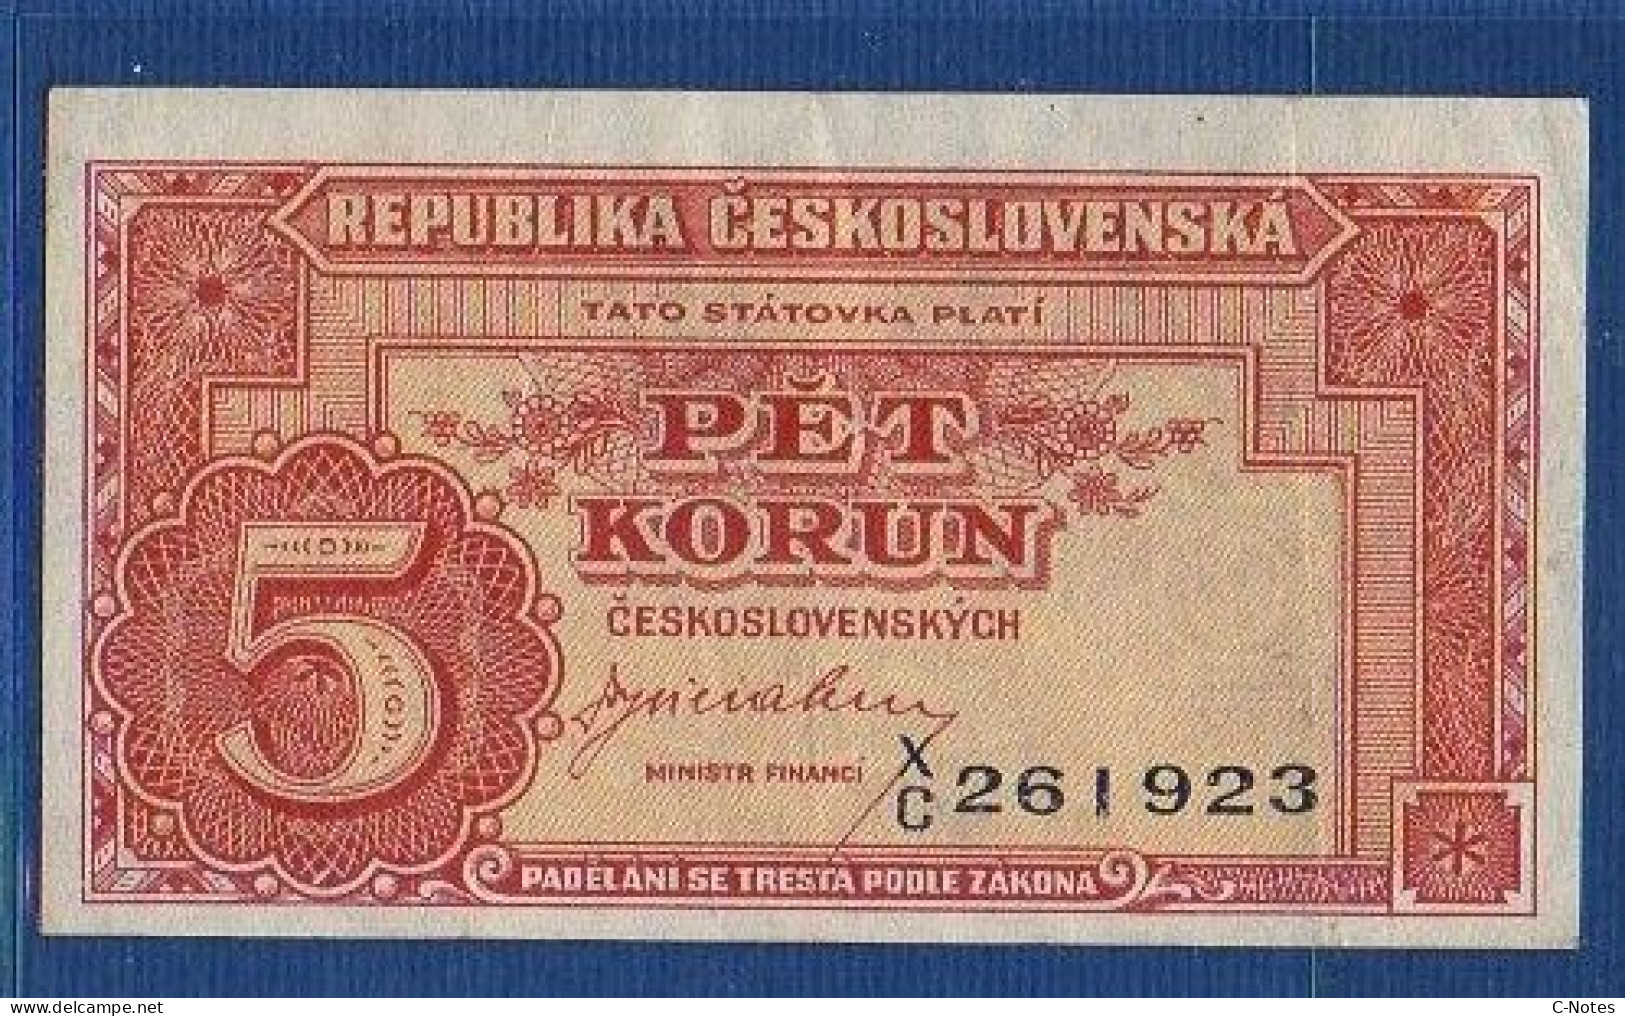 CZECHOSLOVAKIA - P.59a – 5 Korún ND (1945) VF/XF, S/n X/C 261923 - Czechoslovakia